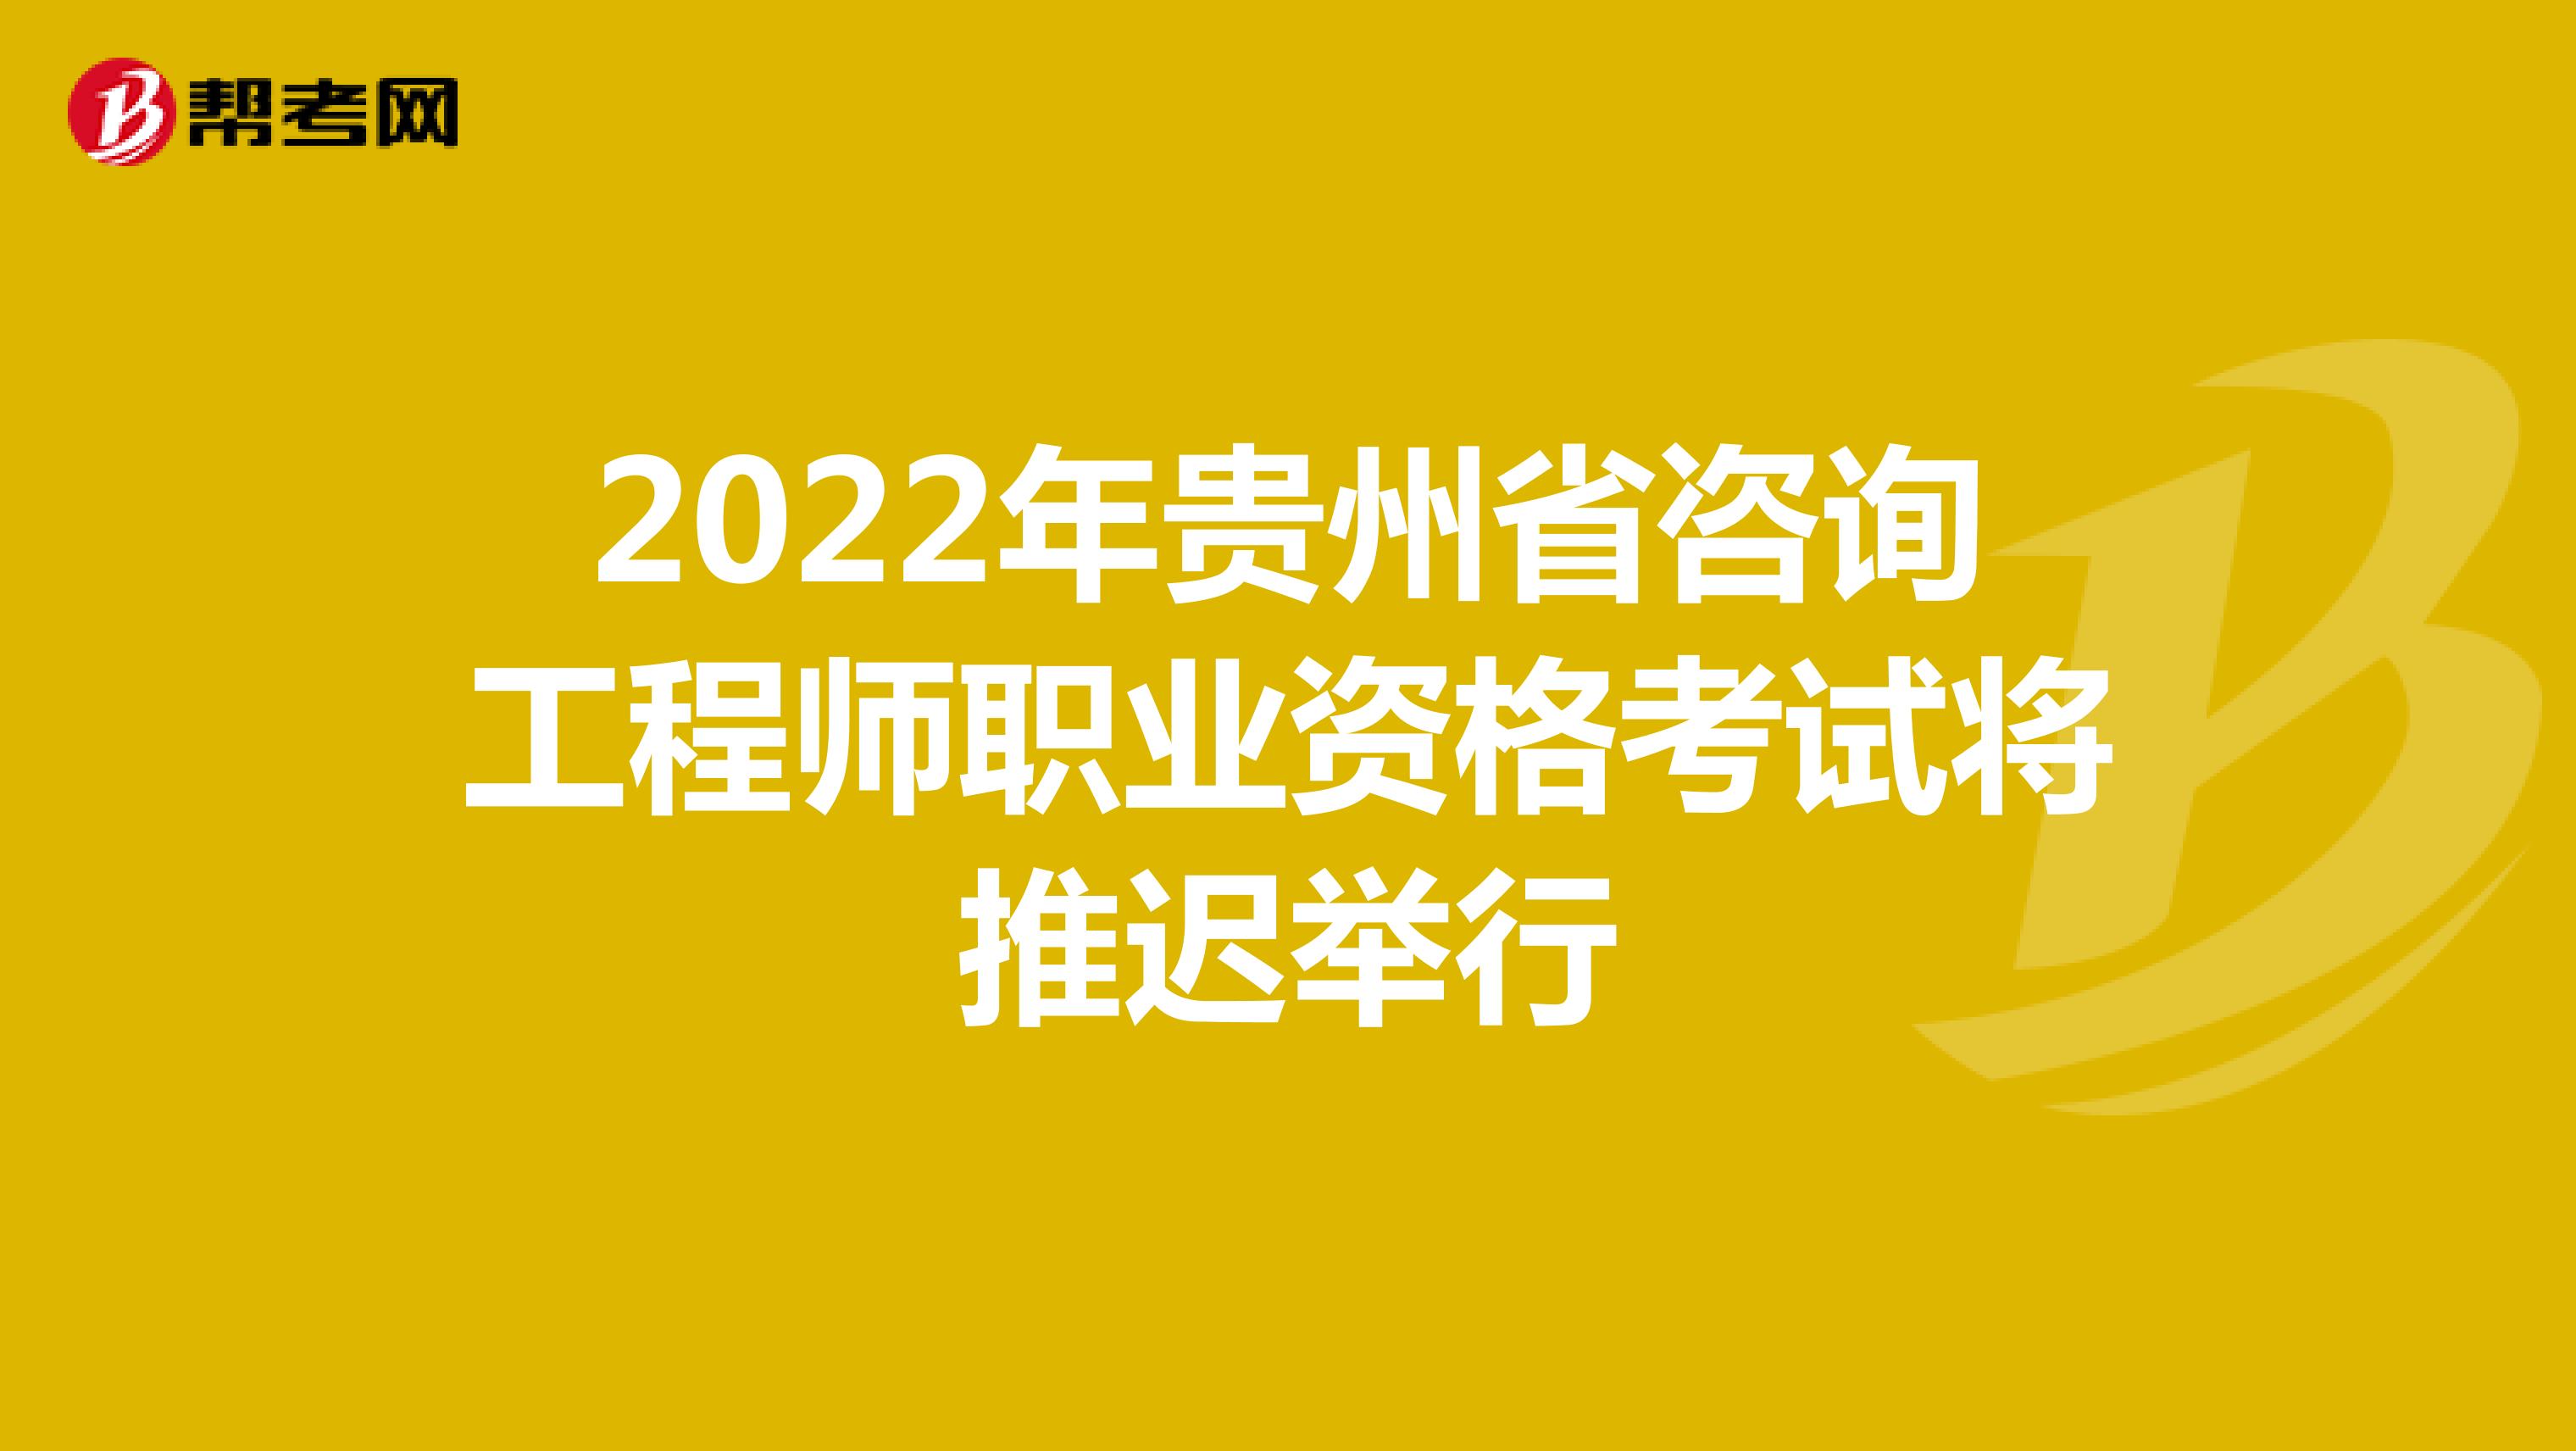 2022年贵州省咨询工程师职业资格考试将推迟举行